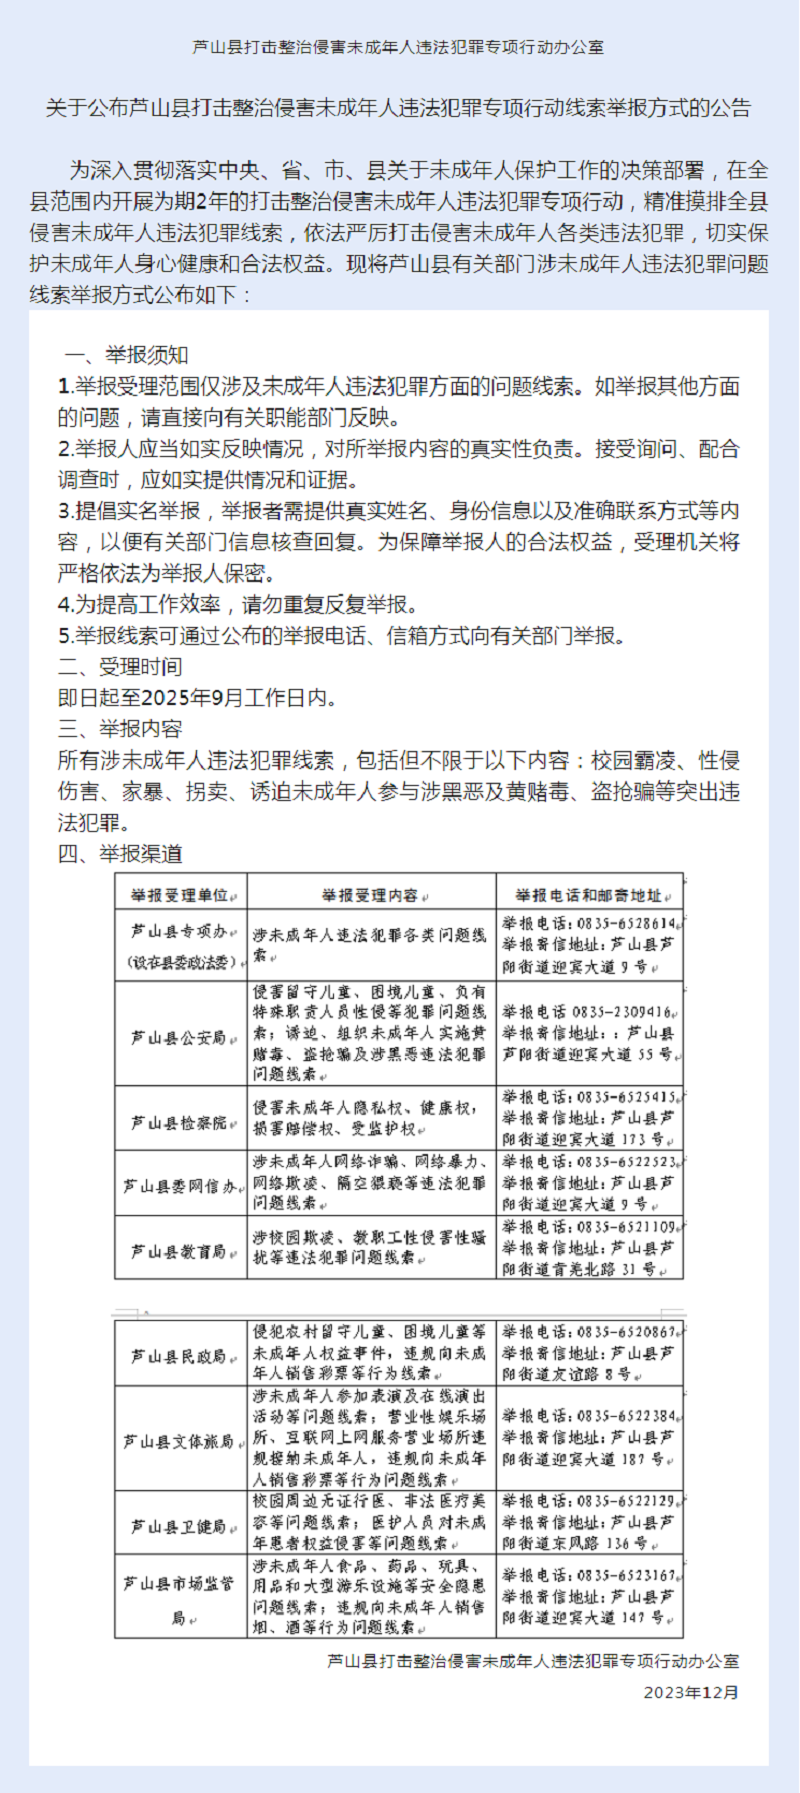 关于公布芦山县打击整治侵害未成年人违法犯罪专项行动线索举报方式的公告.png